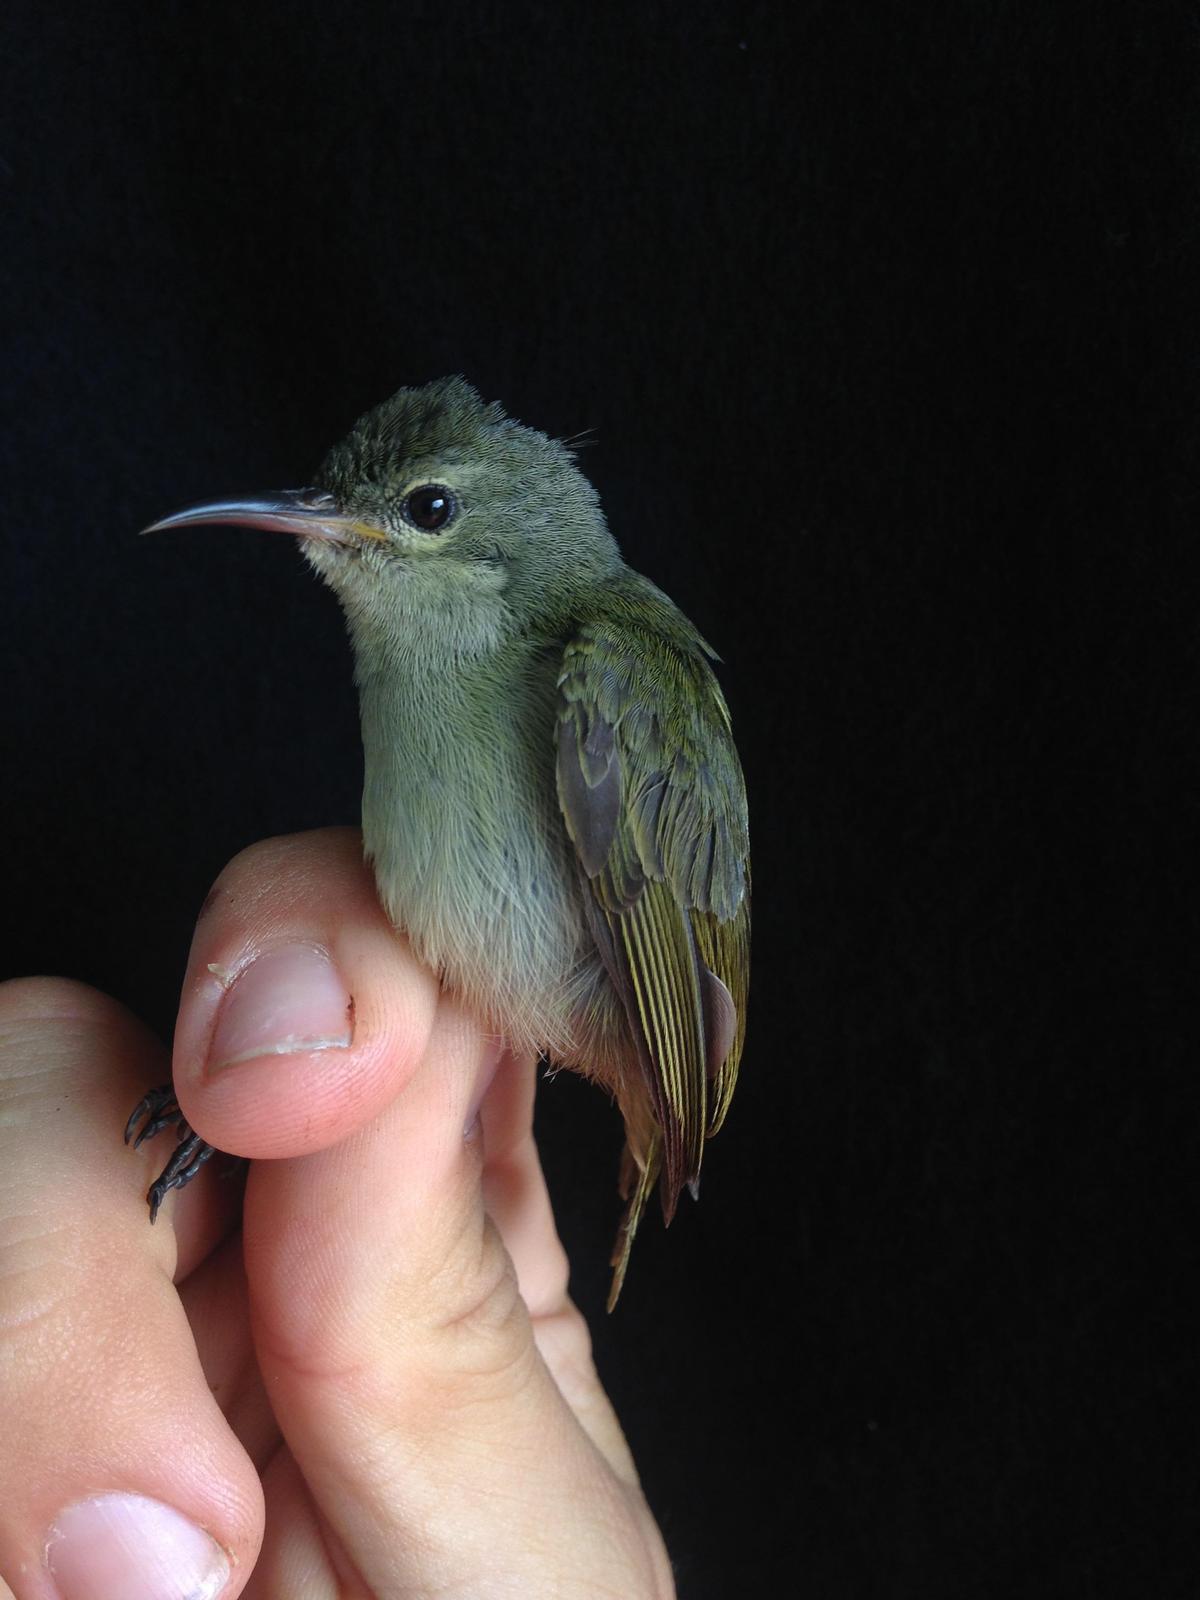 Little Green Sunbird Photo by Oscar Johnson